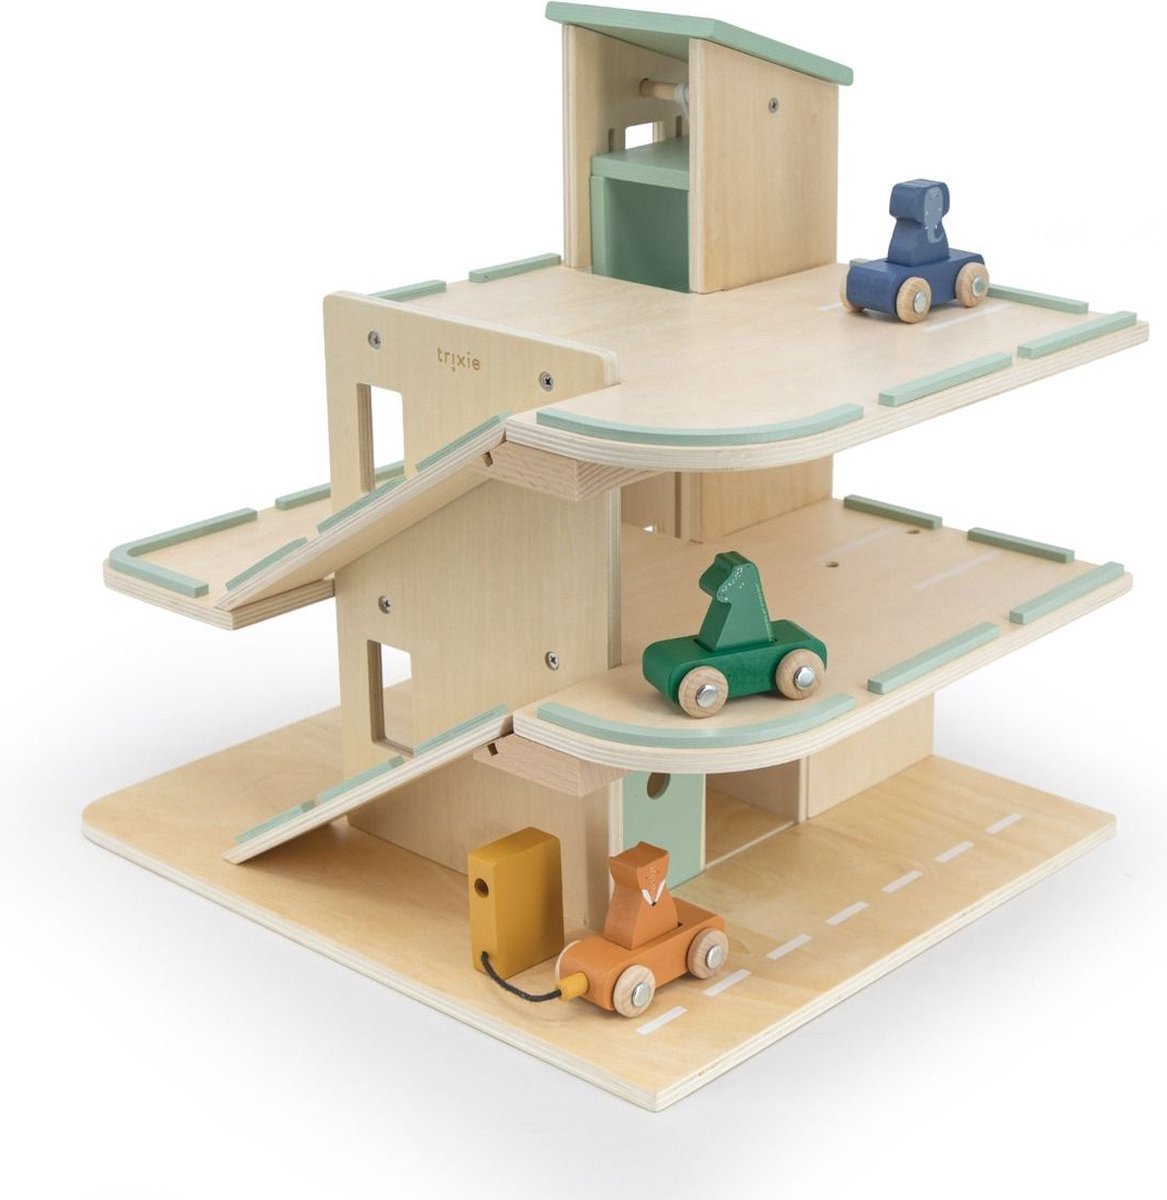 Trixie - Houten Garage met Accessoires - Houten speelgoed | bol.com